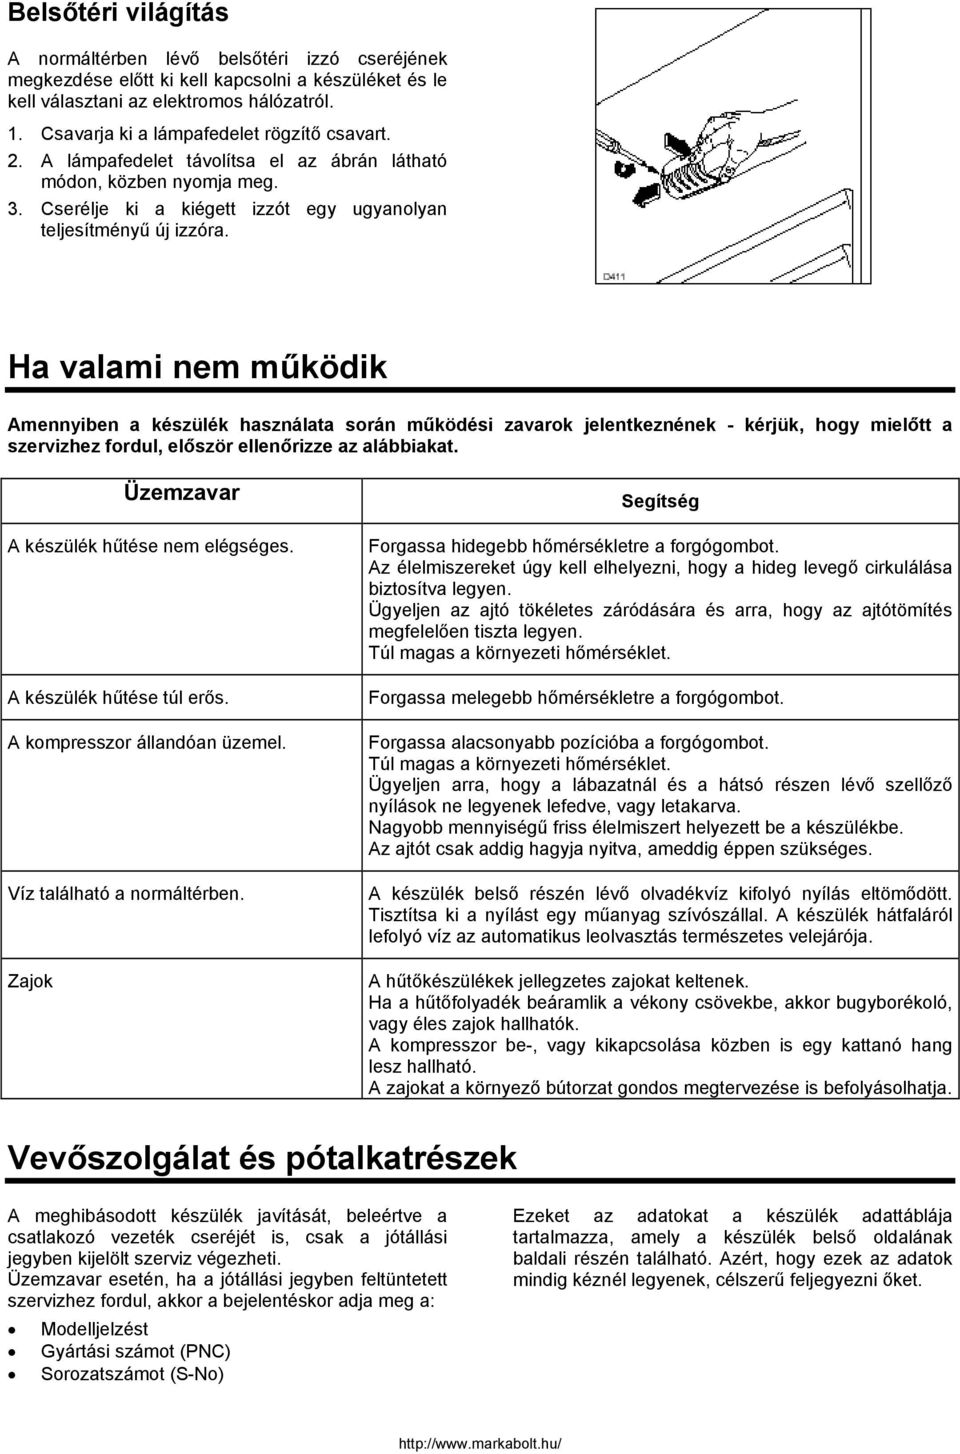 HŰTŐSZEKRÉNY - PDF Ingyenes letöltés